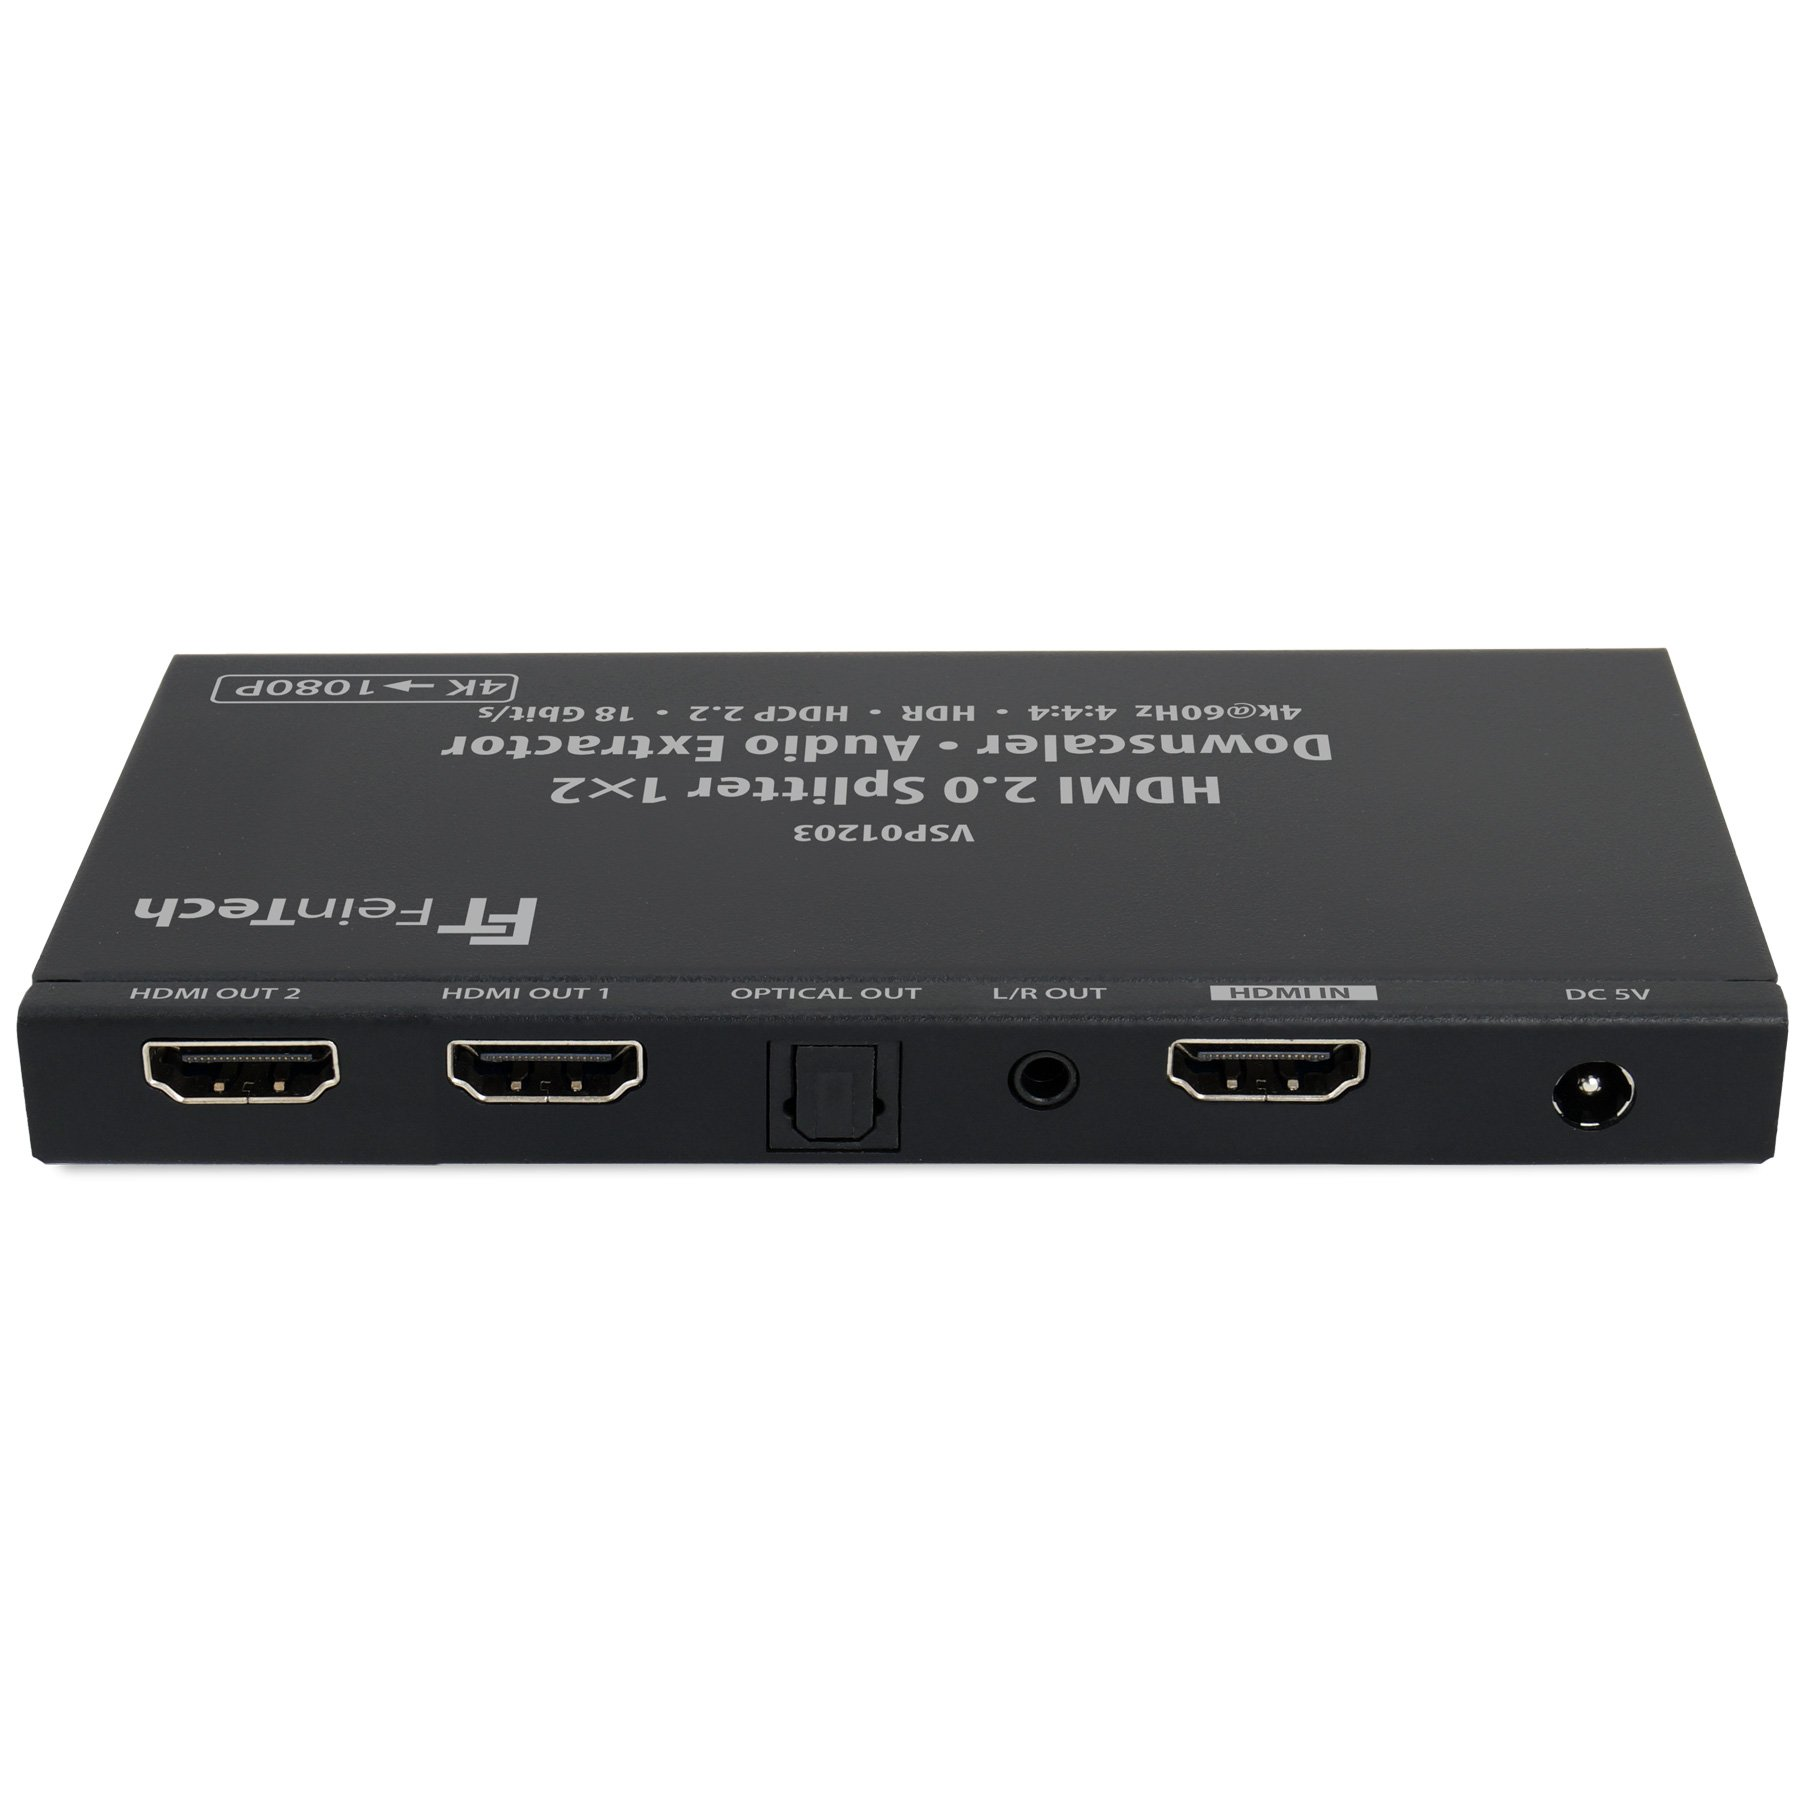 FEINTECH VSP01203 Verteiler 2 HDMI Audio 1x HDMI Splitter mit Extractor